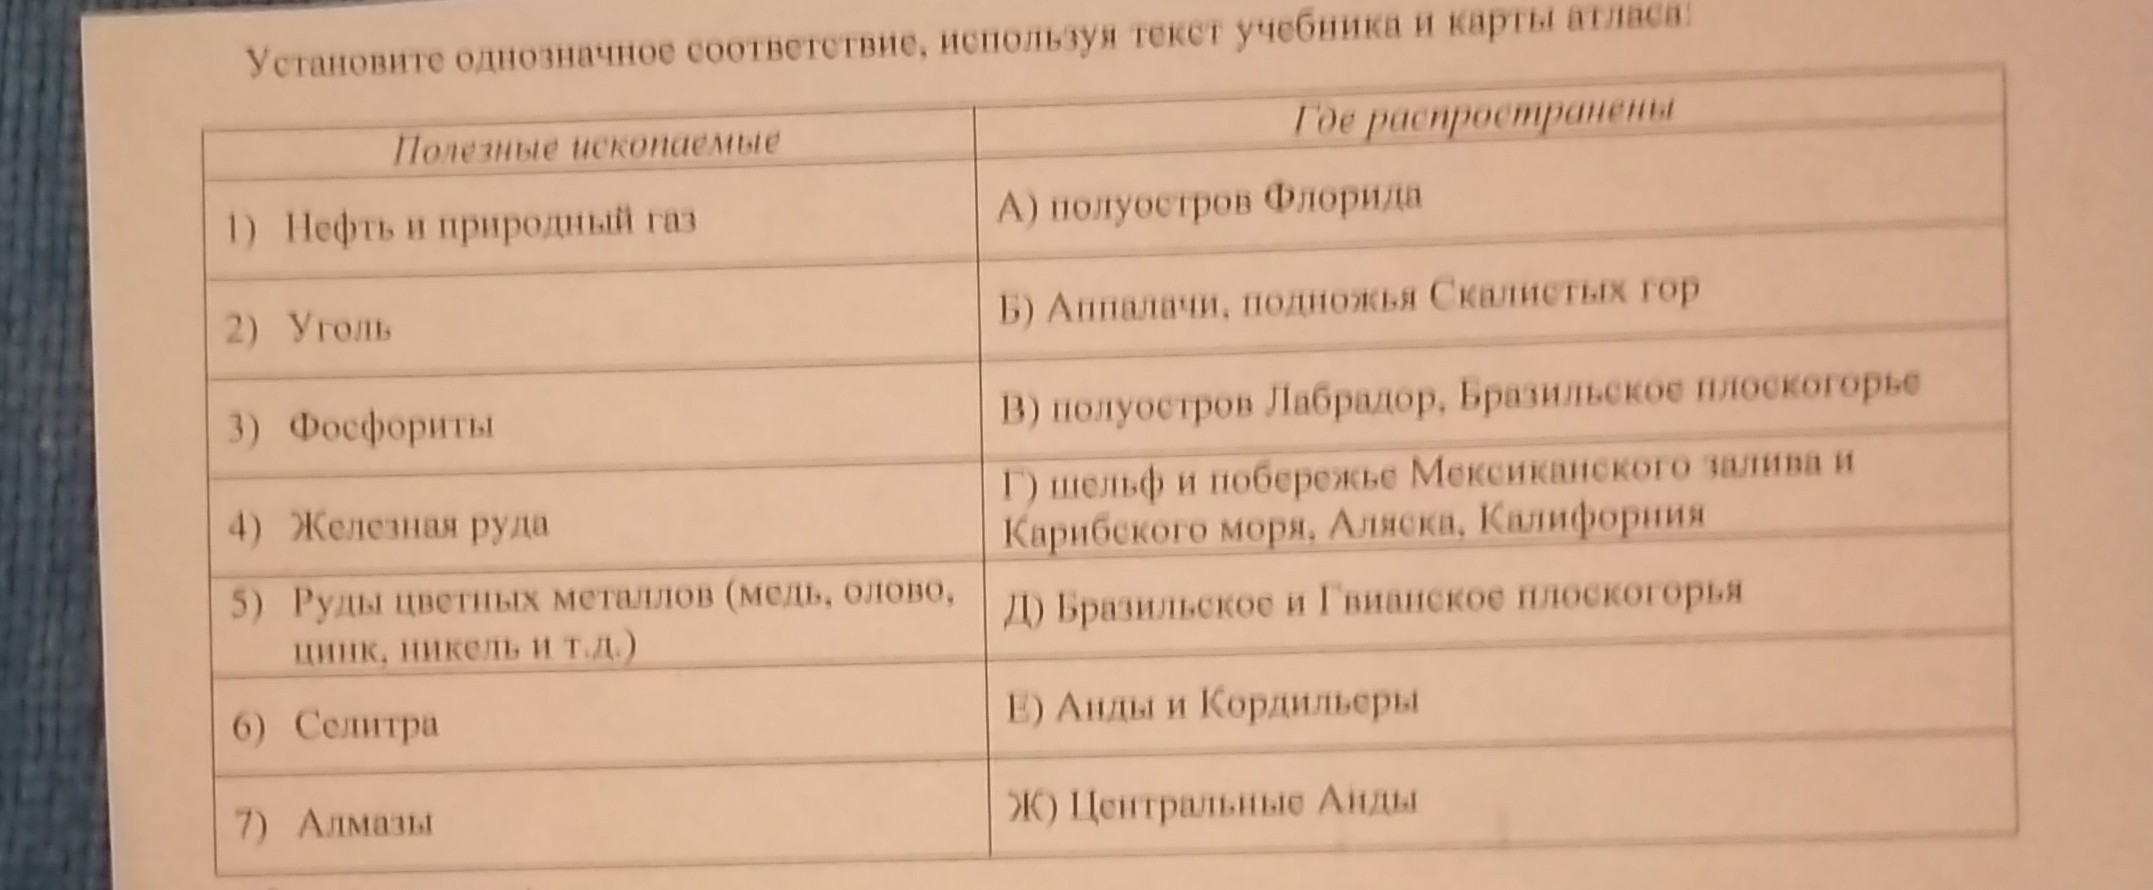 На основе текста учебника данных табл 6. Использую карту атласа составьте список водохранилищ России.